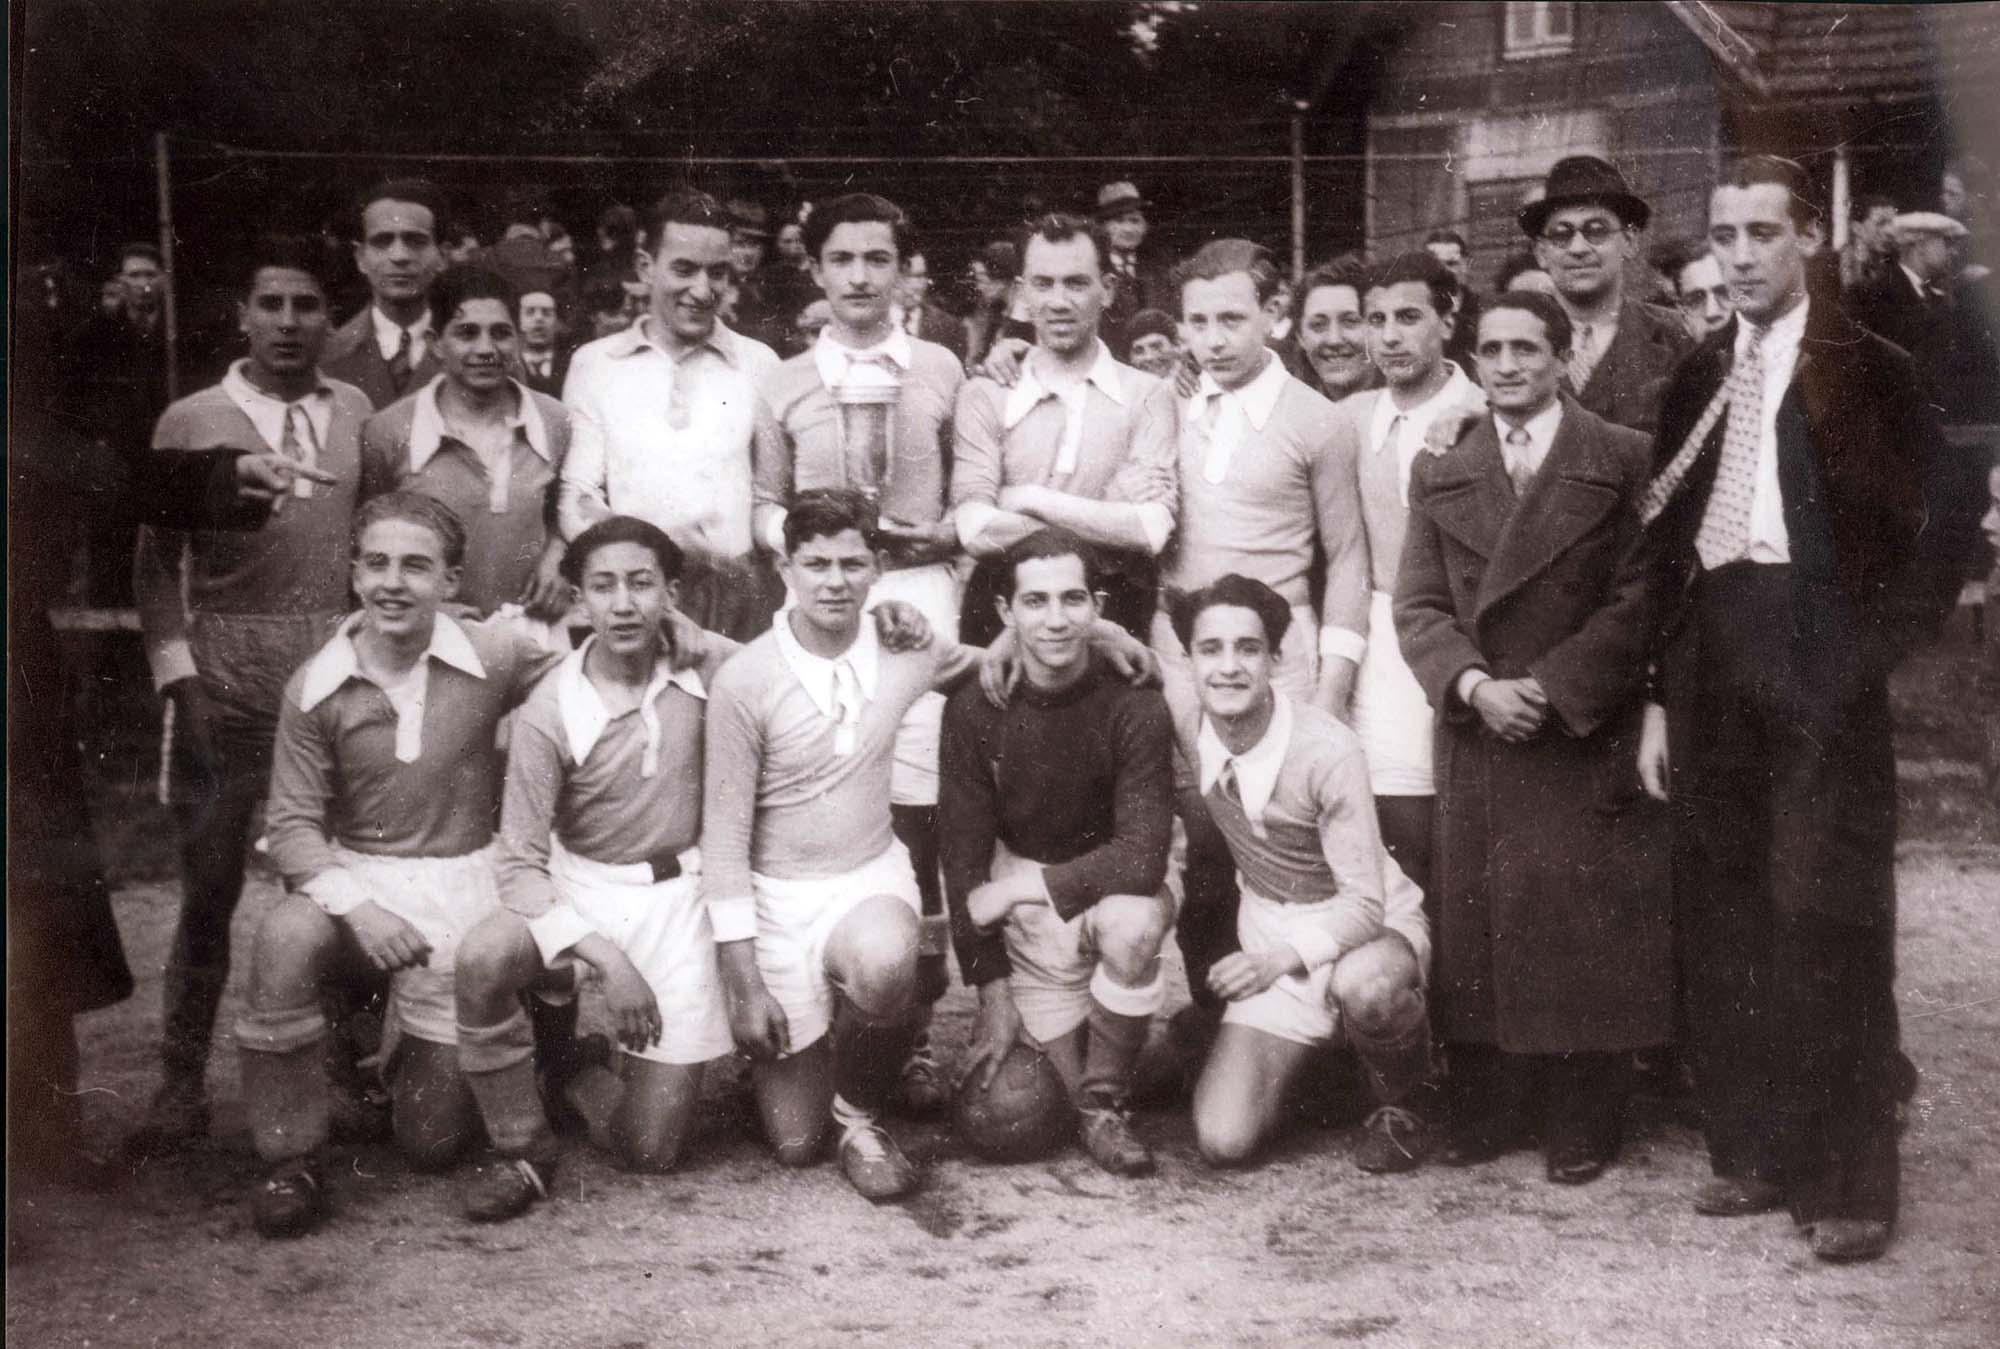 Un equipo de fútbol judío de Francia en 1937, del cual formaba parte Vitali Lemor, quien entregó la foto al archivo